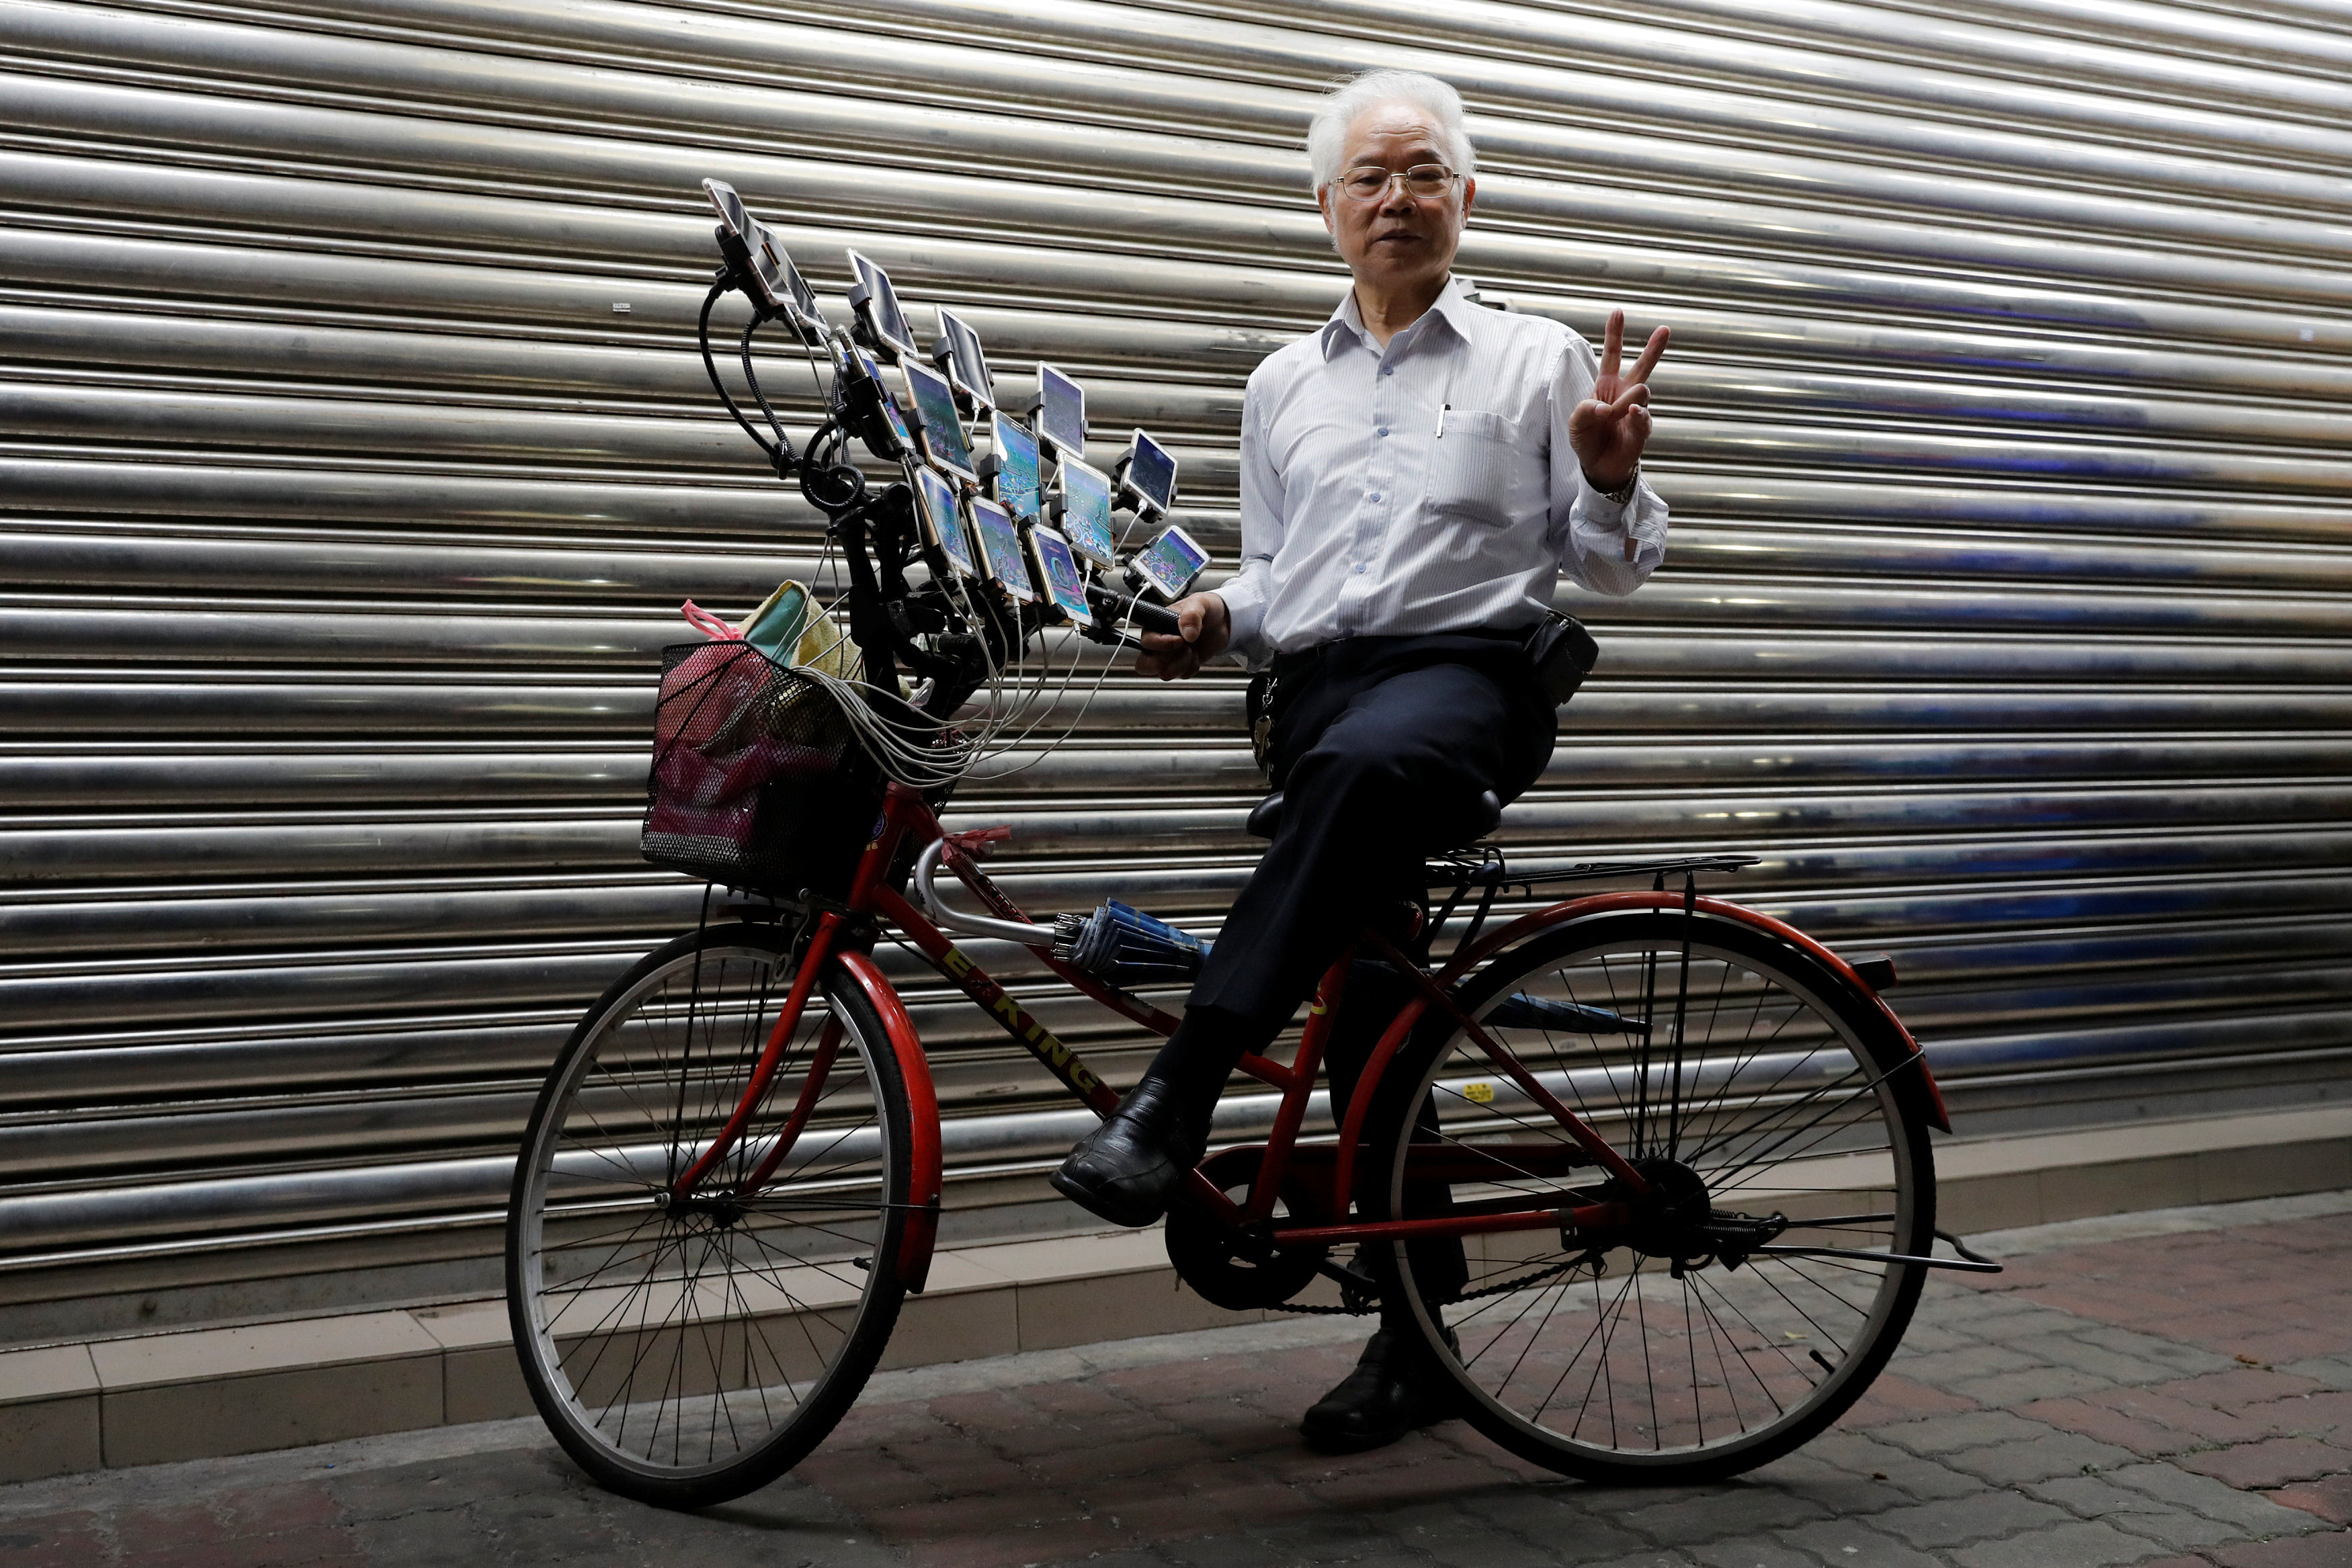 Настолько понравился. Дедуля на велосипеде. Дед на велосипеде покемон го. Дедушка на велосипеде покемон го. Китаец на велосипеде с кучей смартфонов.